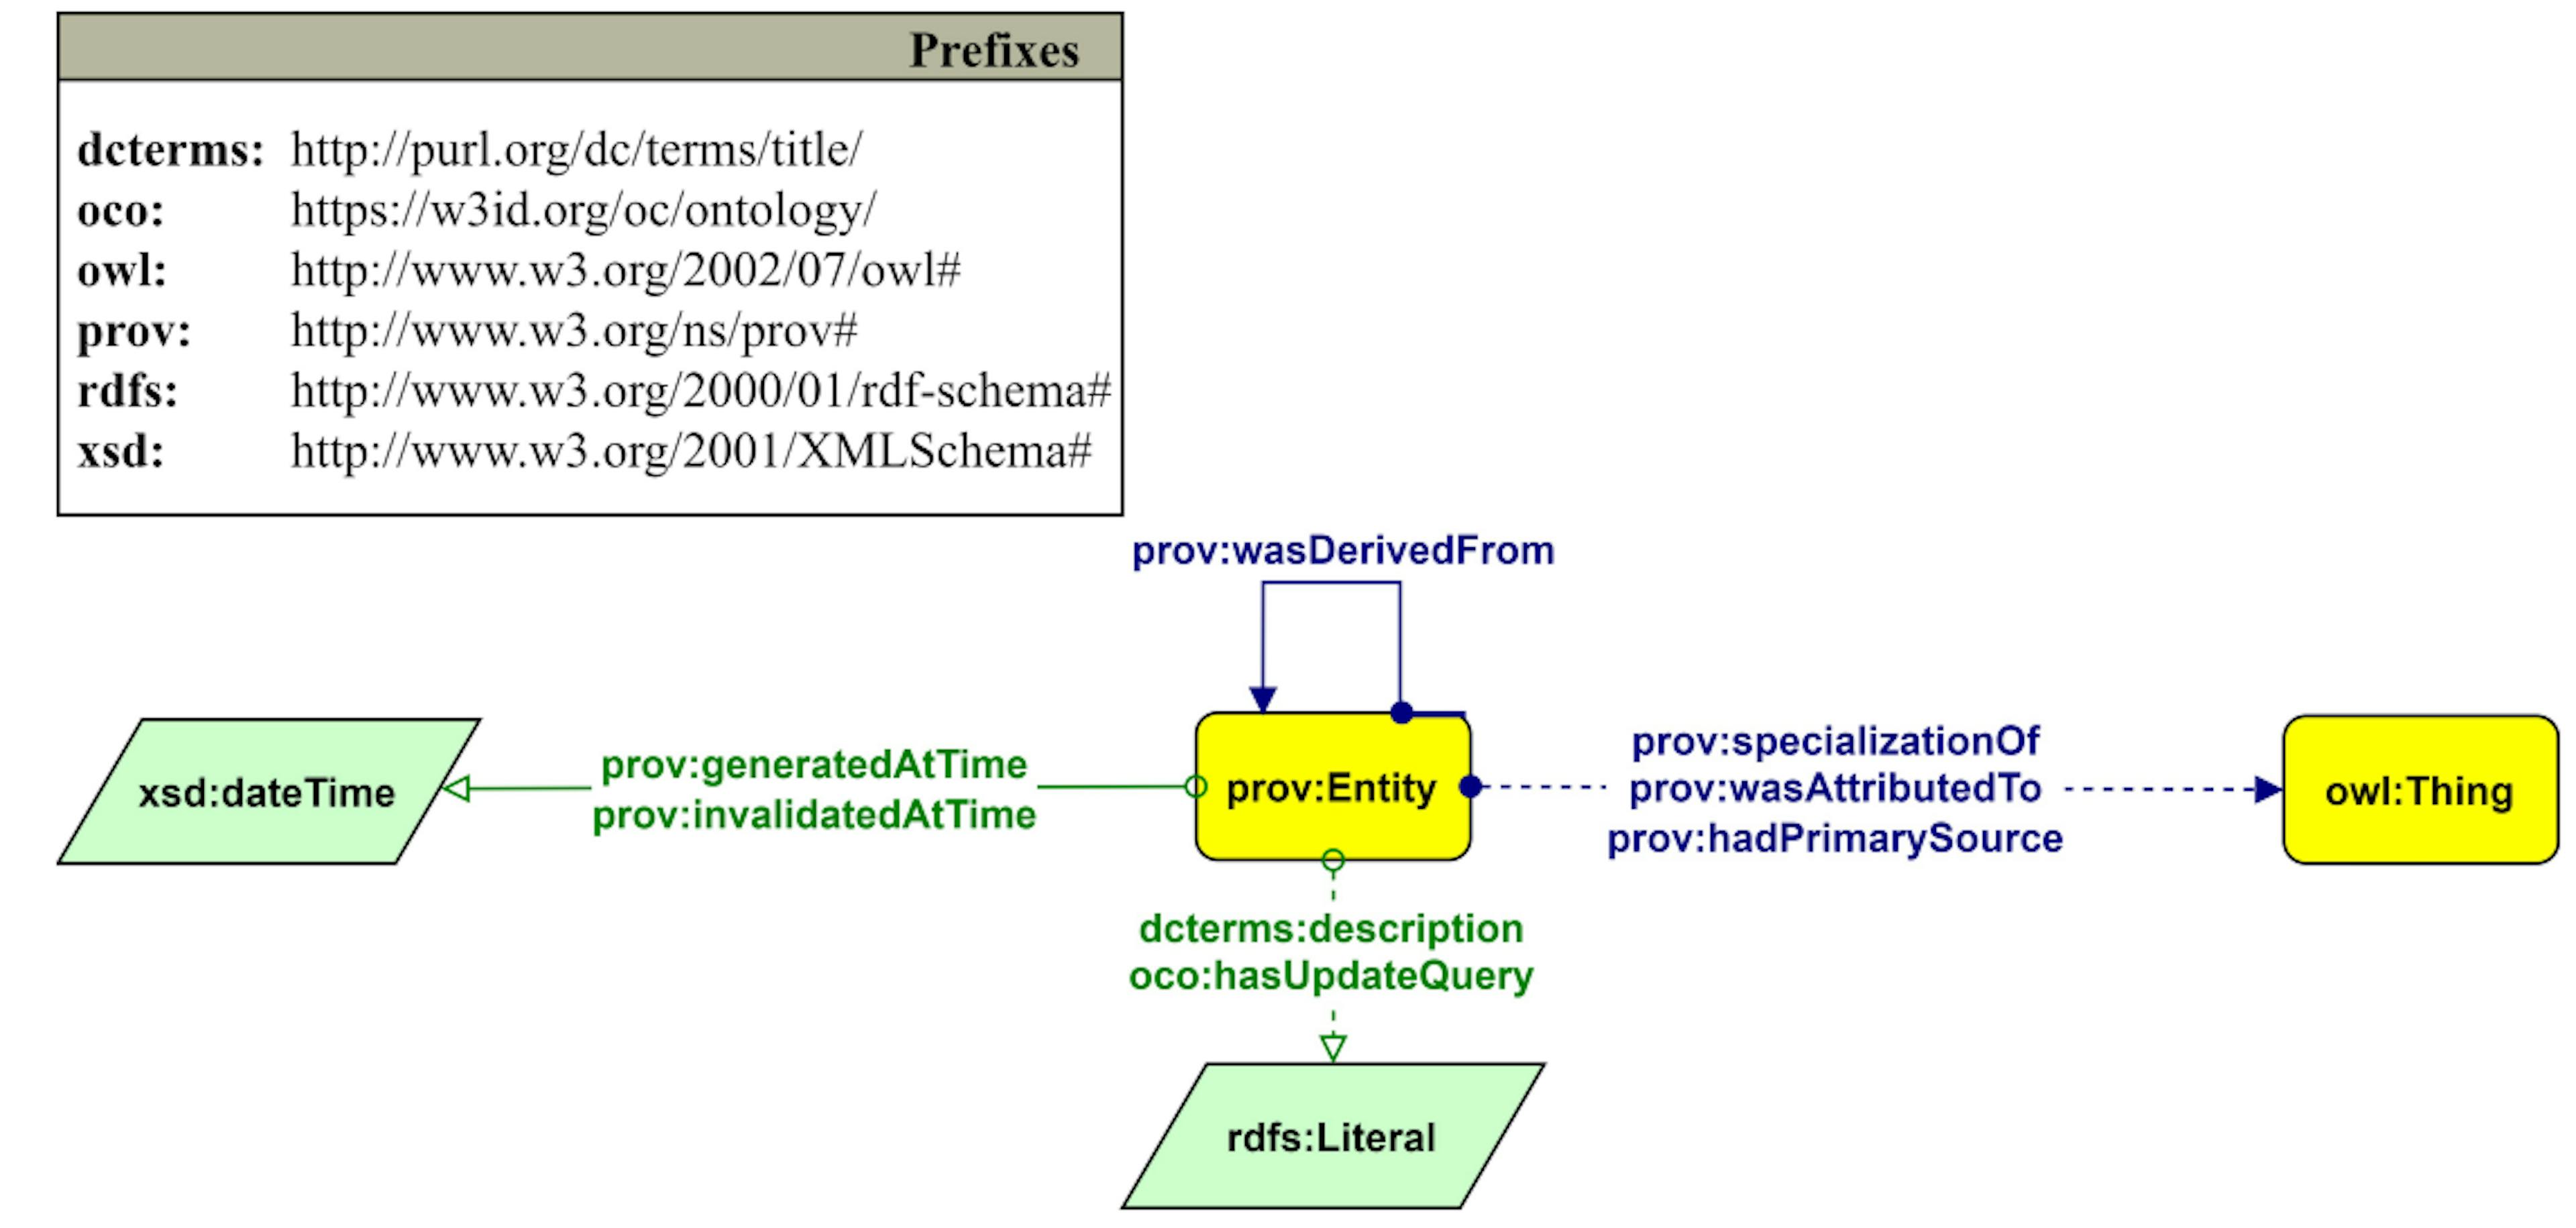 Şekil 7: Bir varlığın (prov:specializationOf aracılığıyla bağlantılı) anlık görüntülerini (prov:Entity) ve ilgili kaynak bilgisini açıklayan Graffoo diyagramı